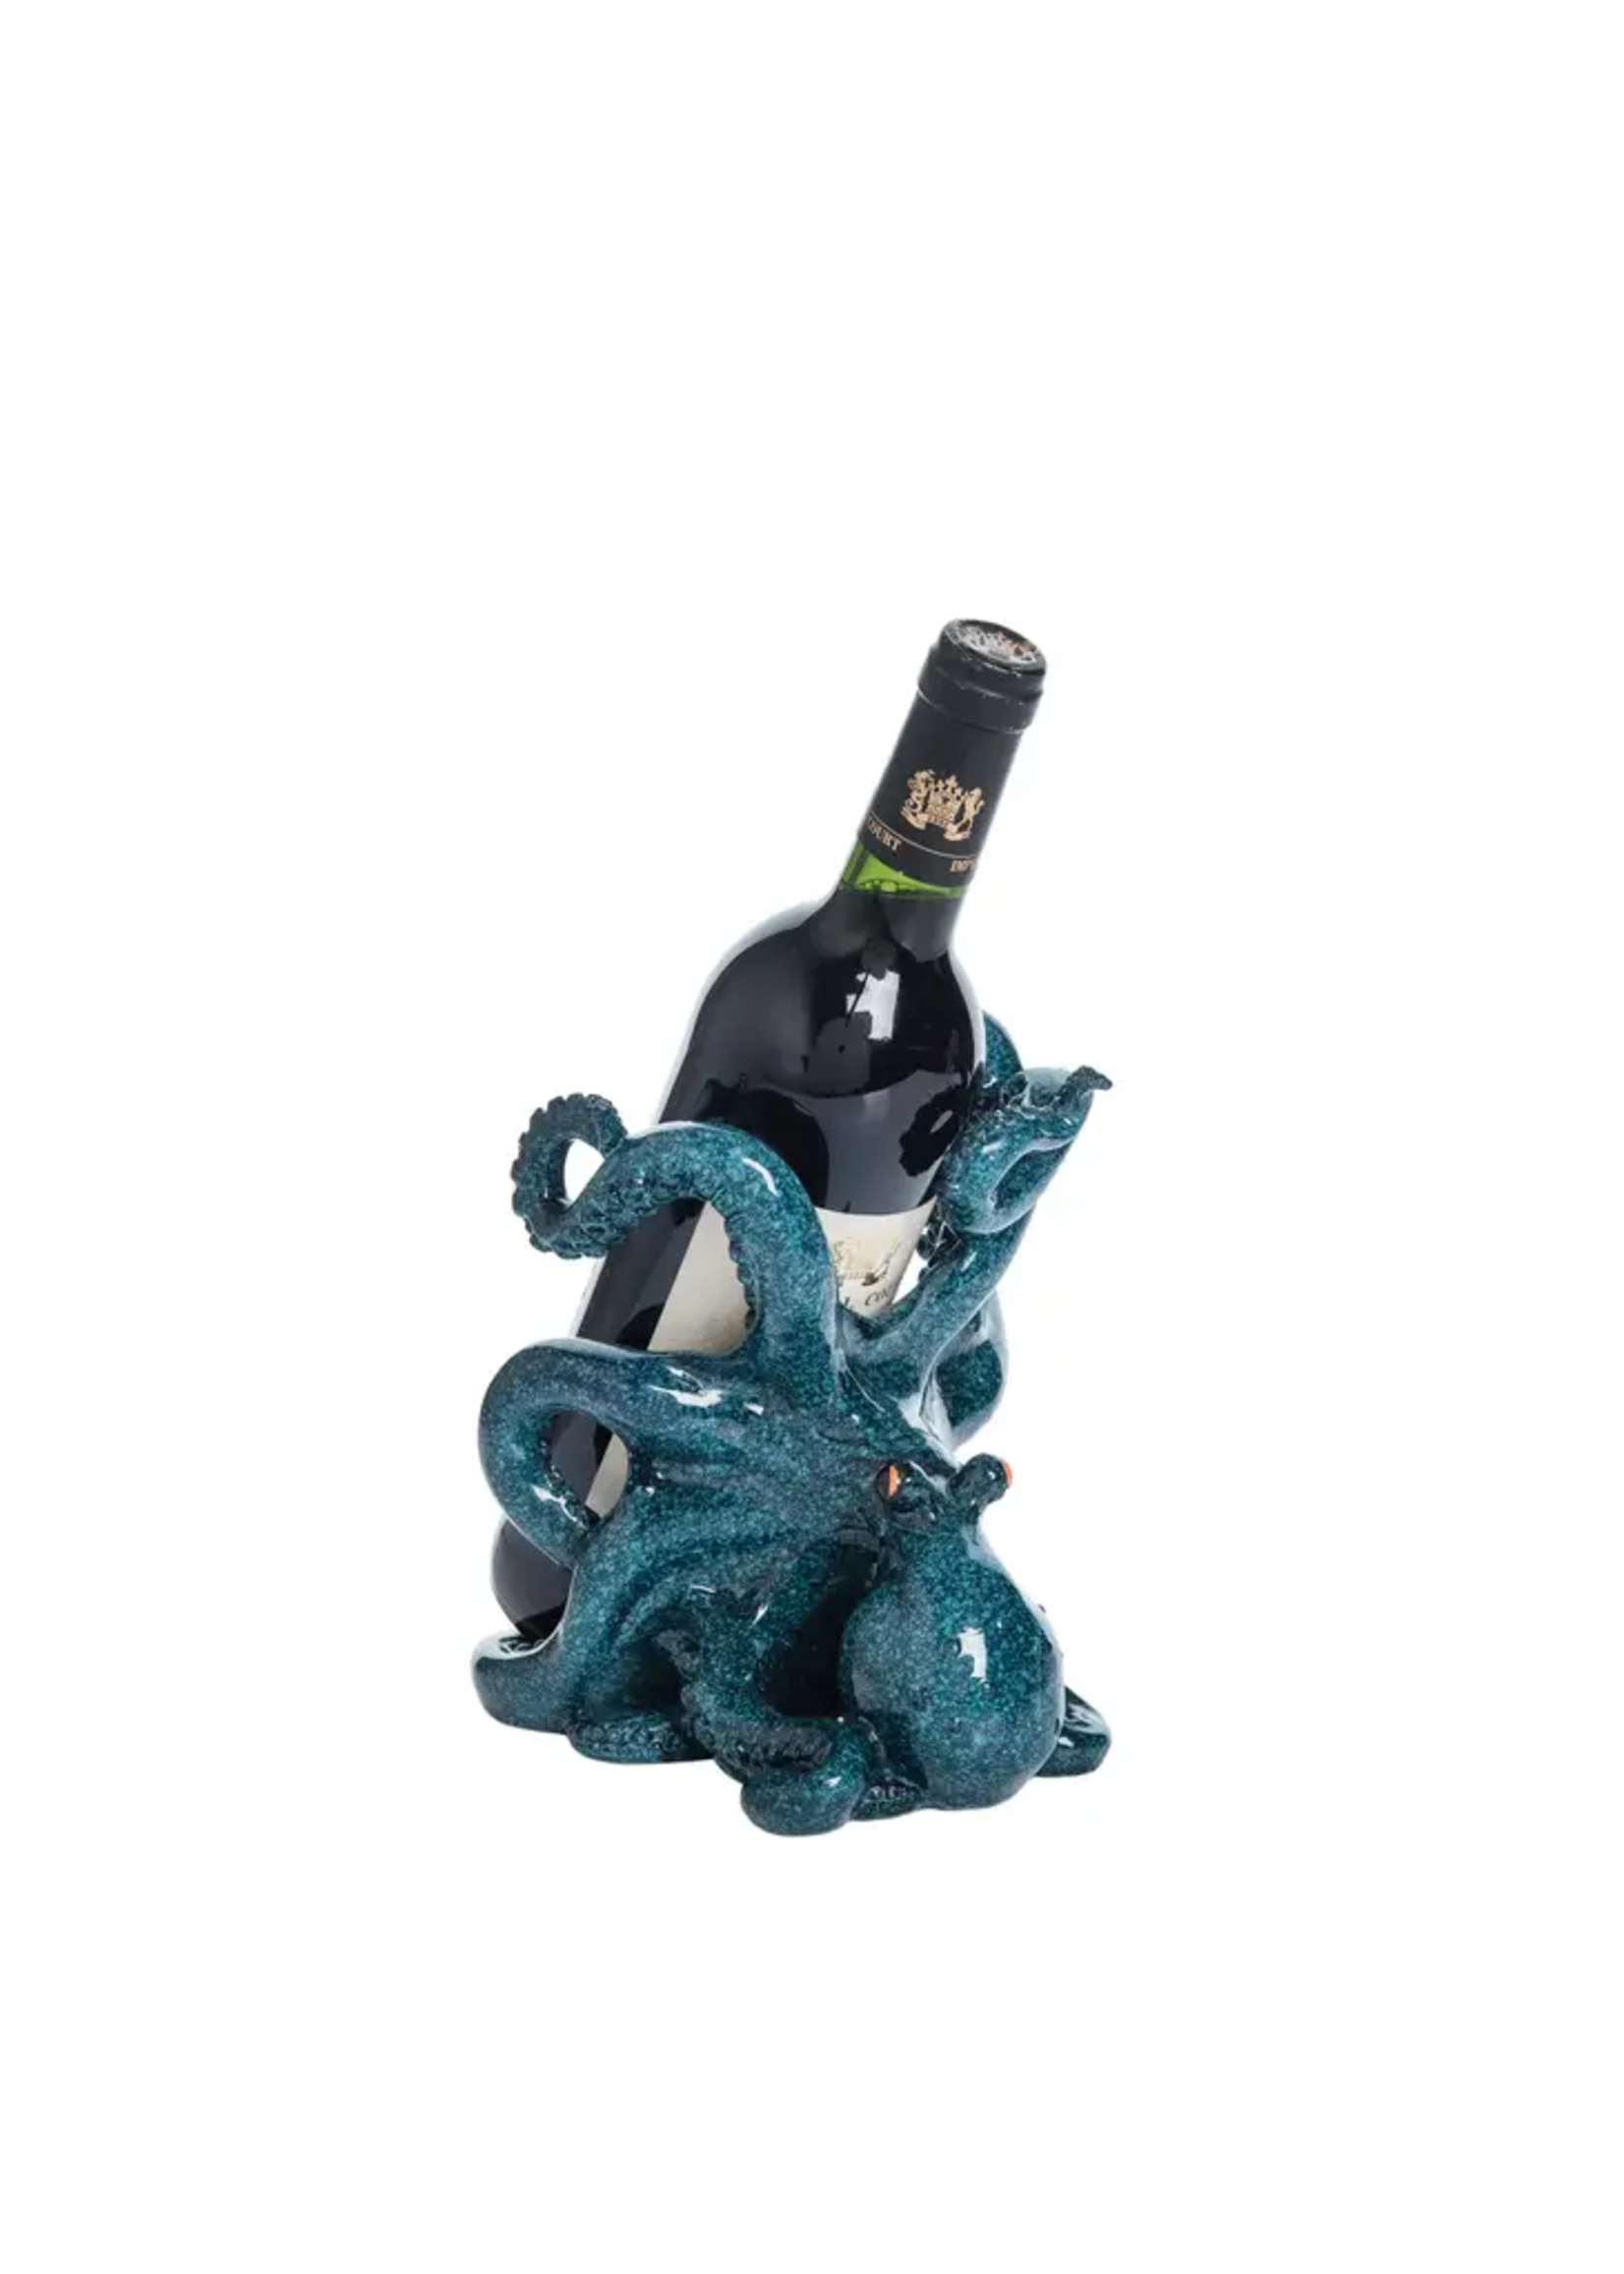 Beachcombers Octopus Wine Bottle Holder